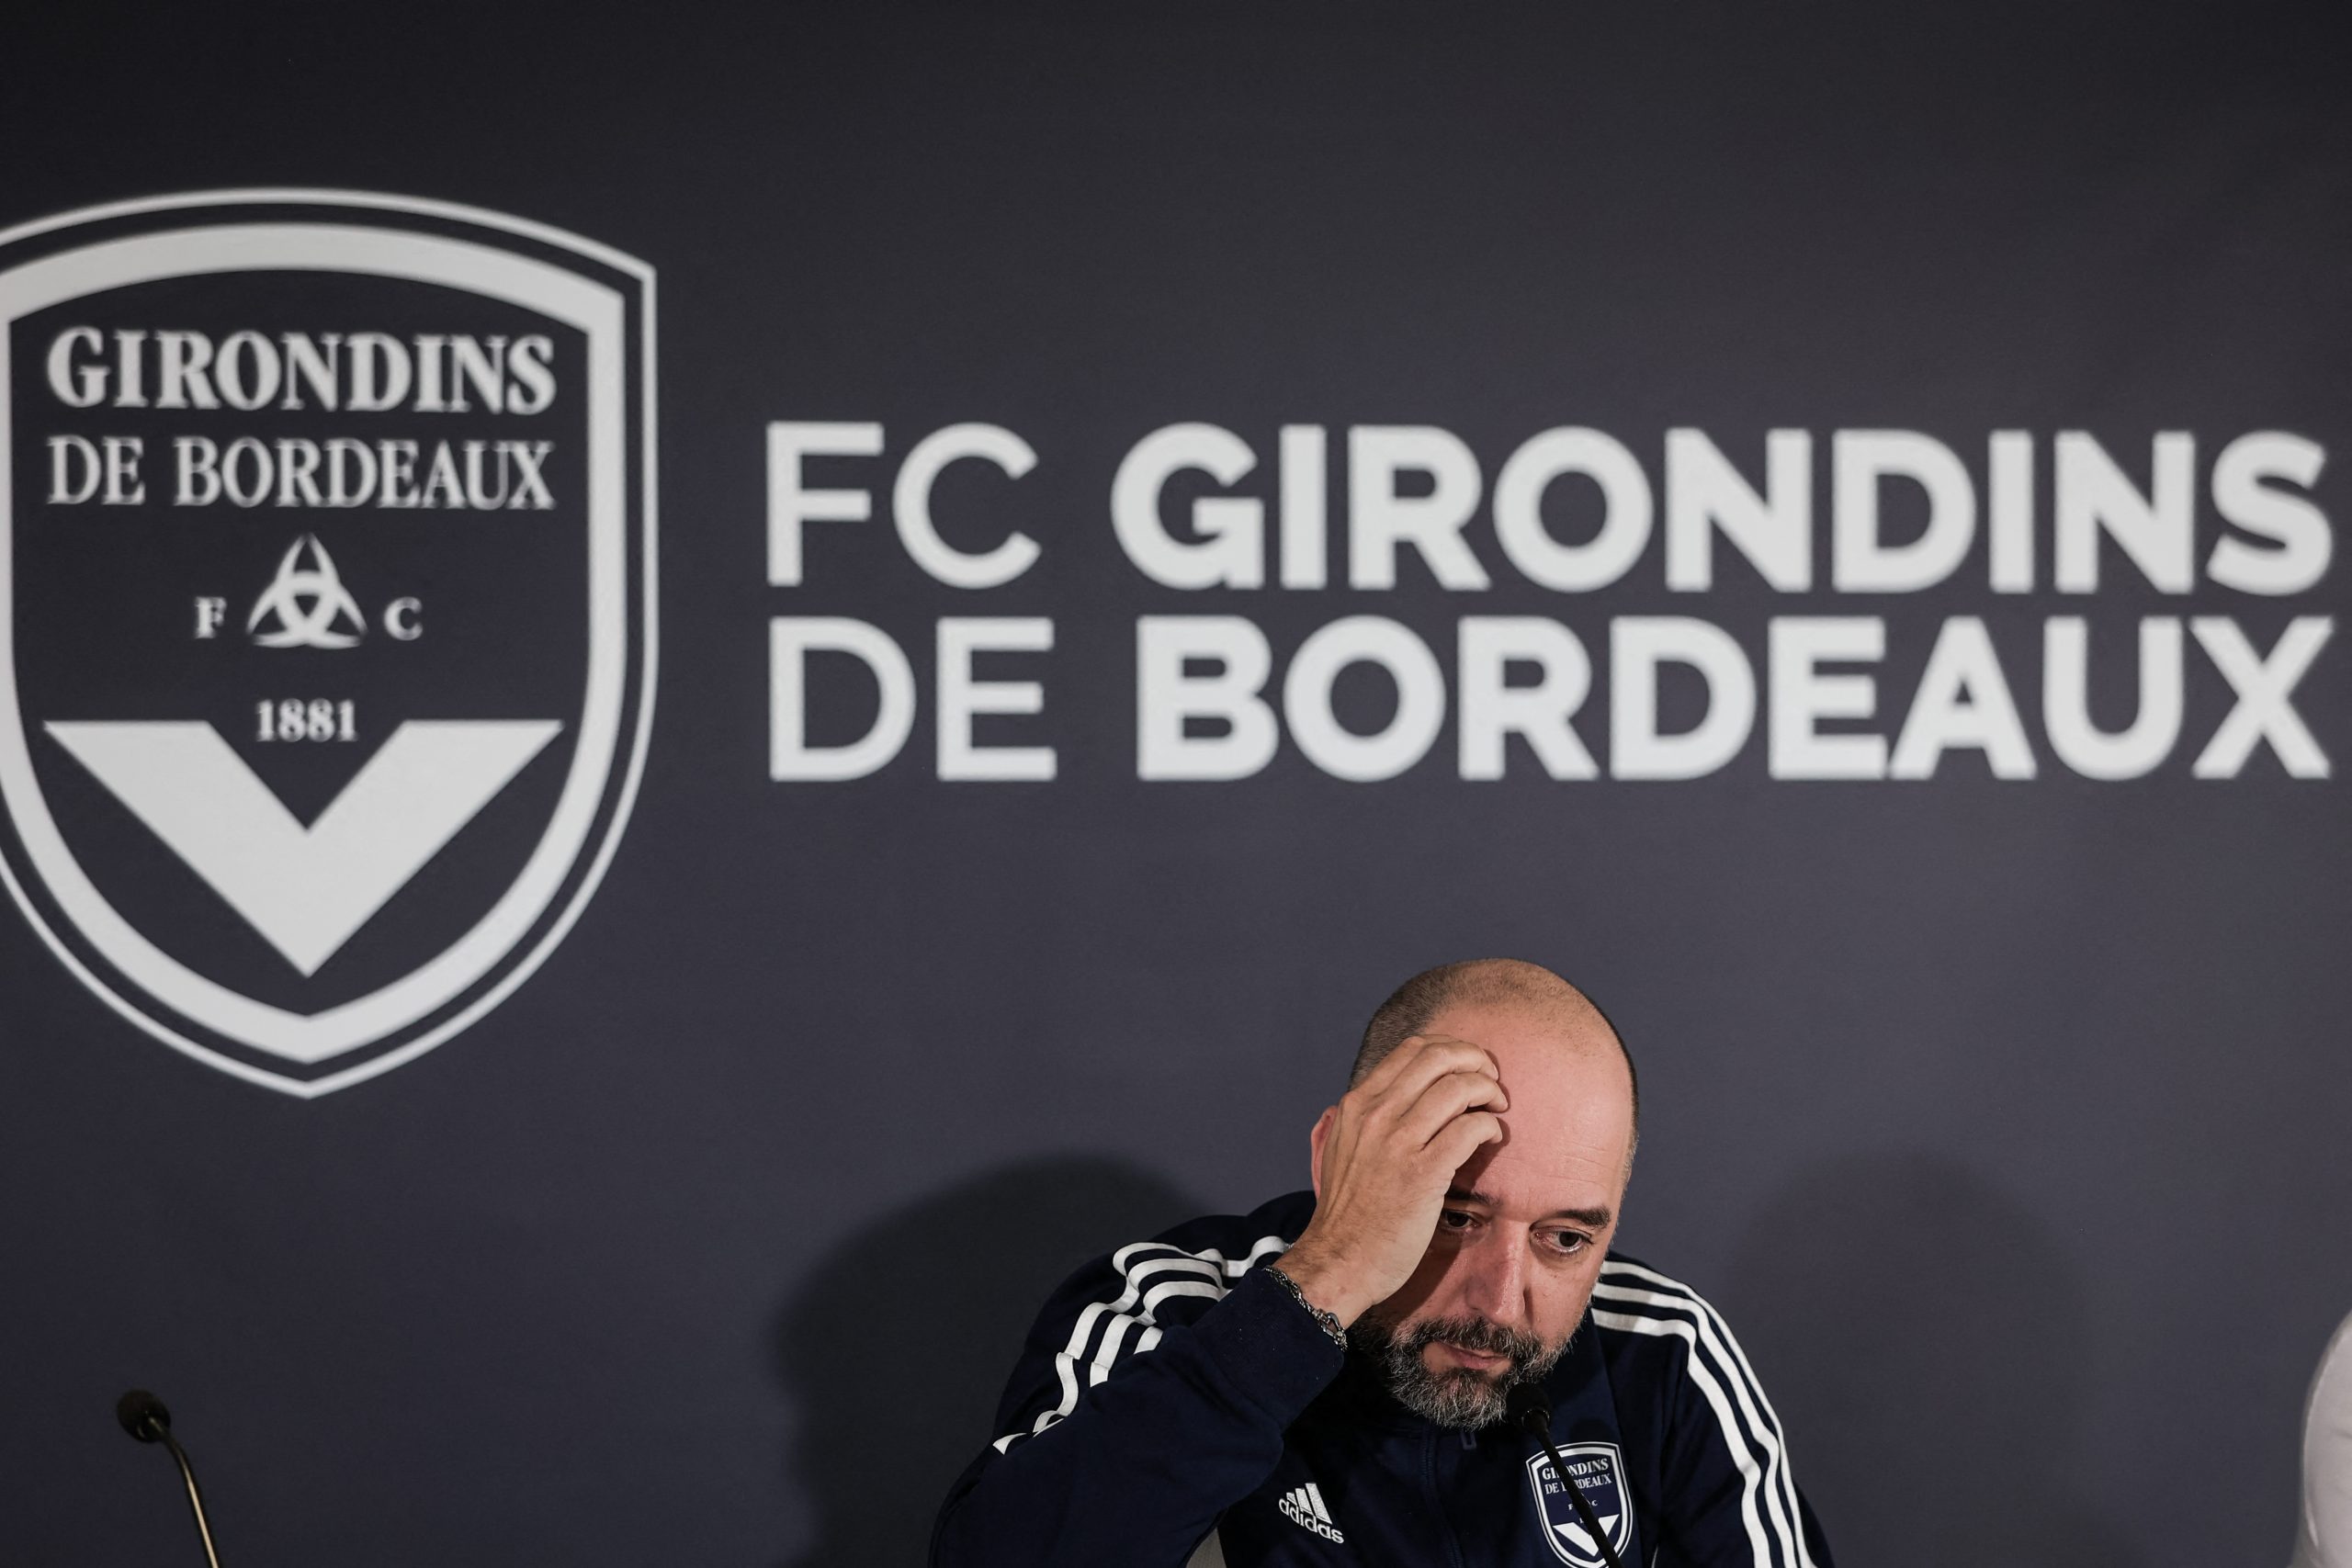 El Girondins de Bordeaux renuncia a su status de club profesional. Rescisión de jugadores y cierre de cantera